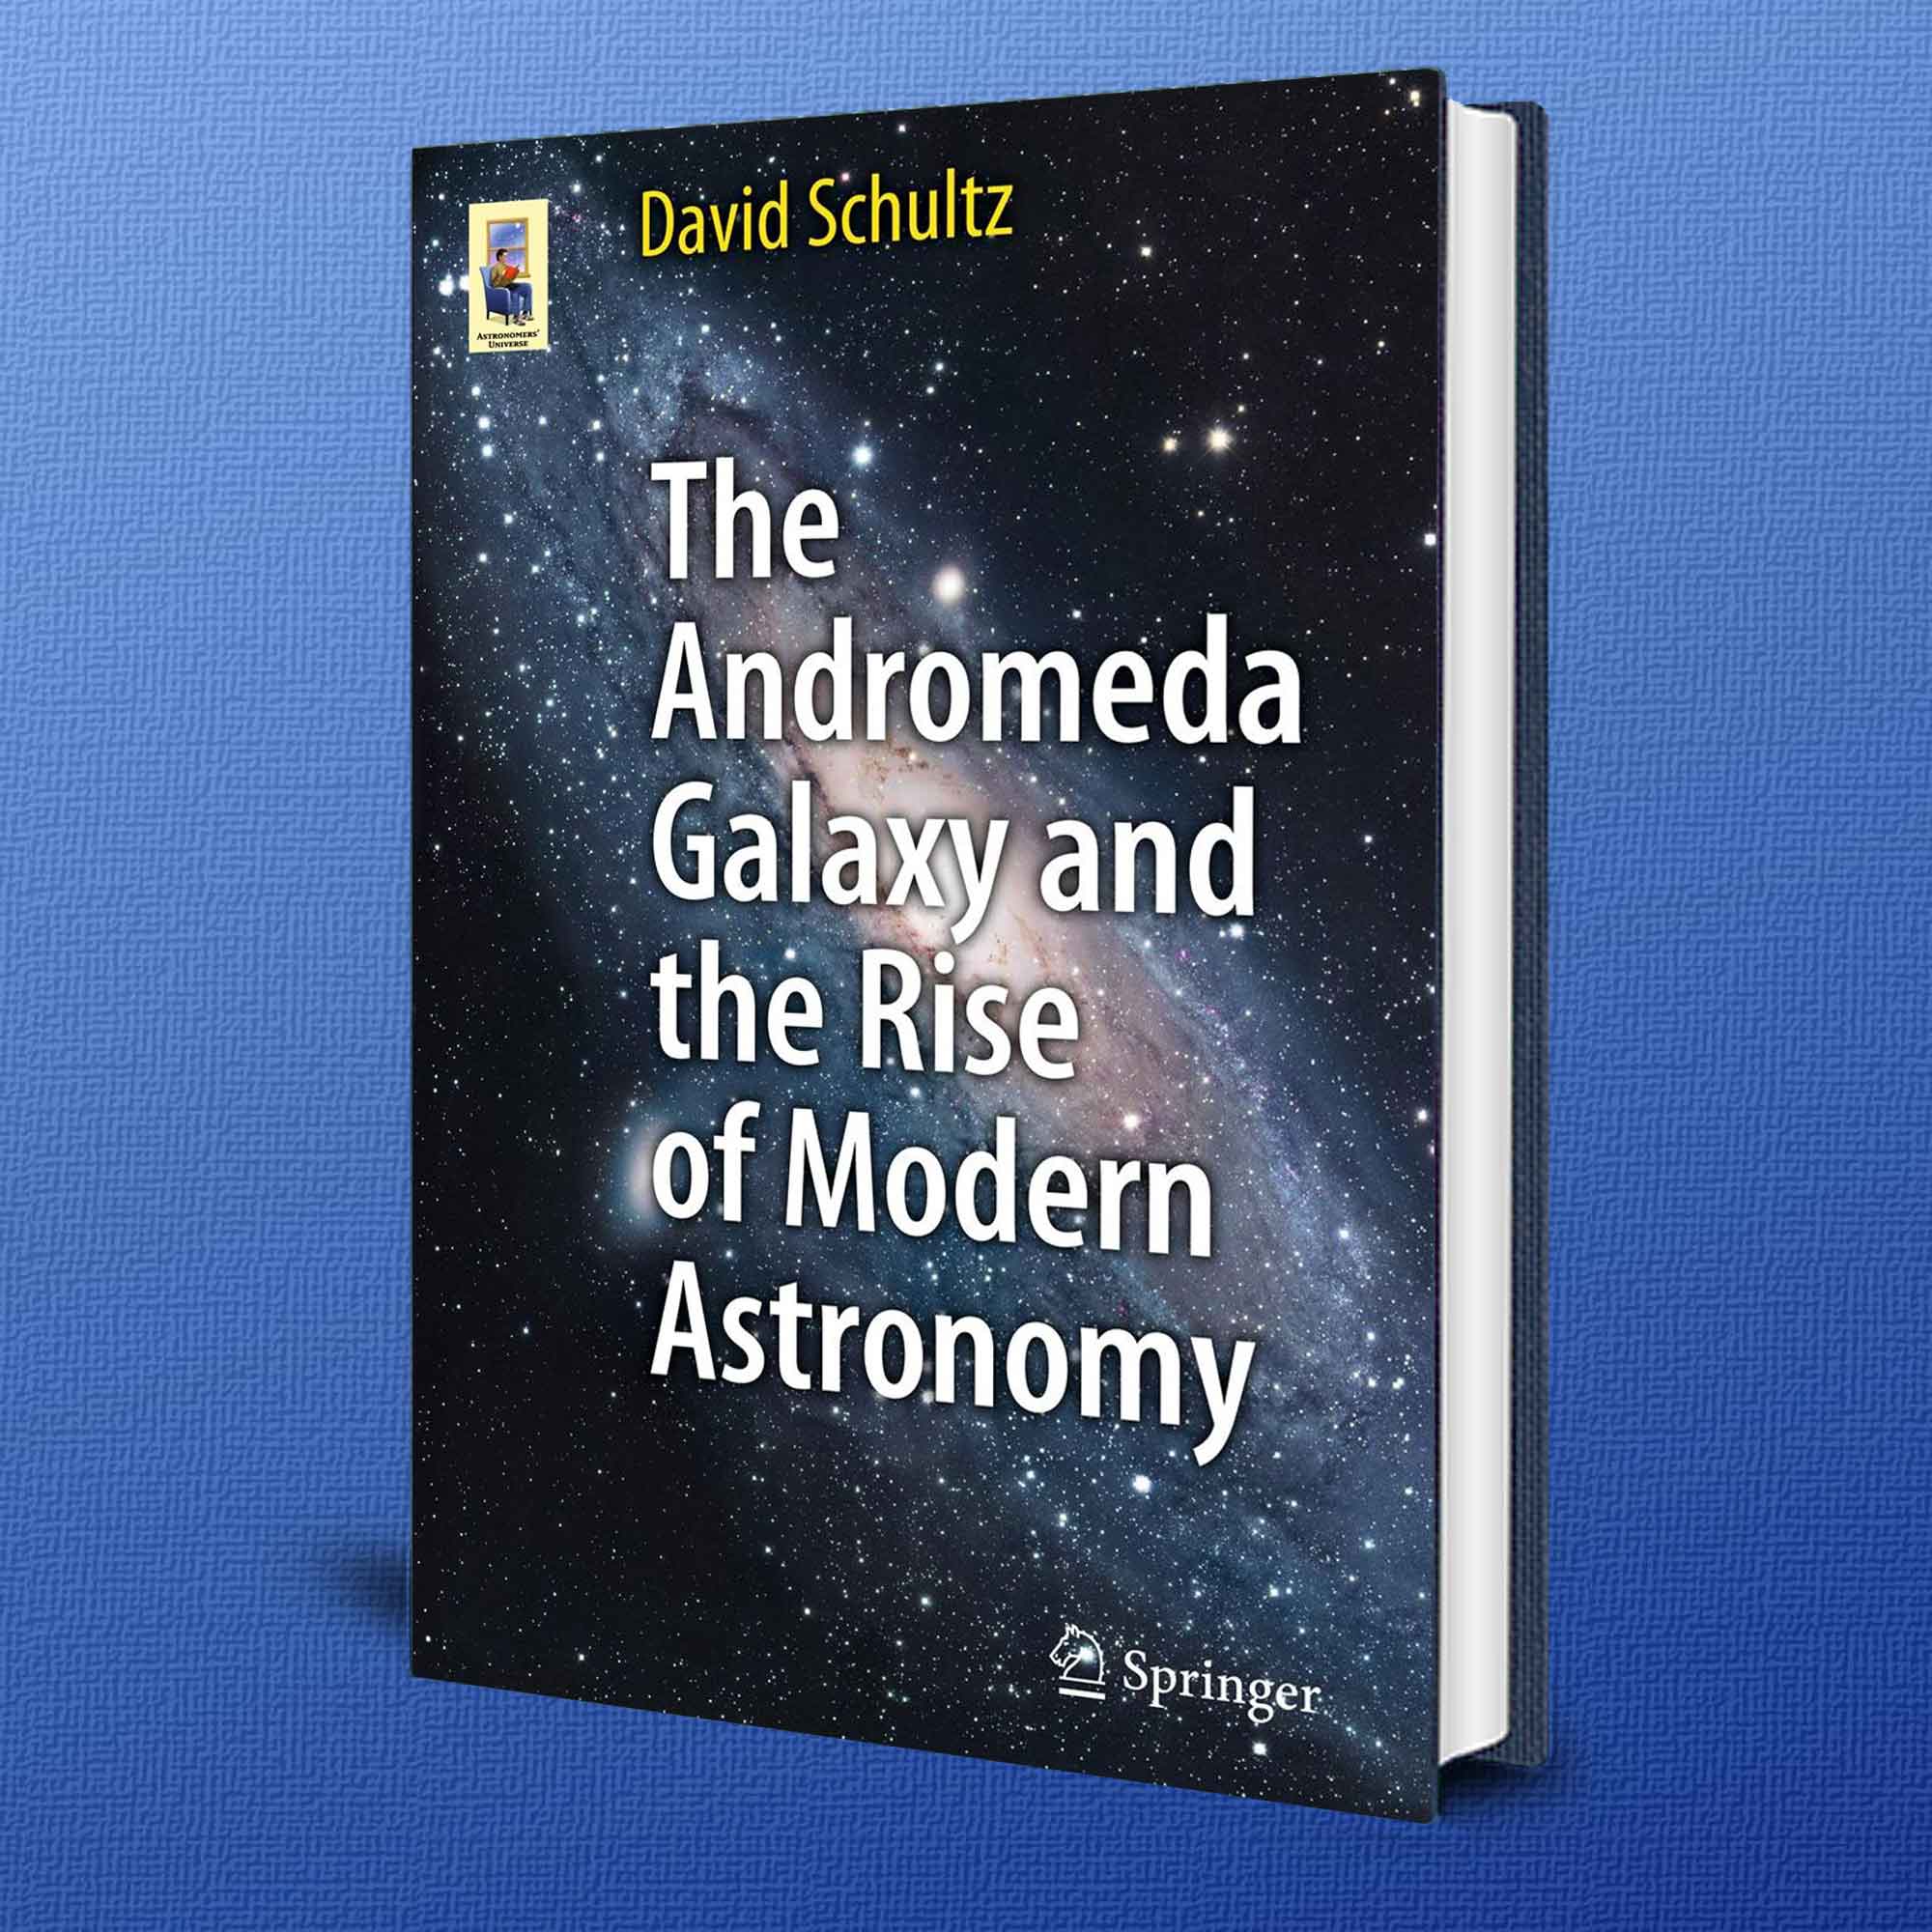 Jul 15th: Andromeda Galaxy, the Big Bang, and Post World War II Astronomy.